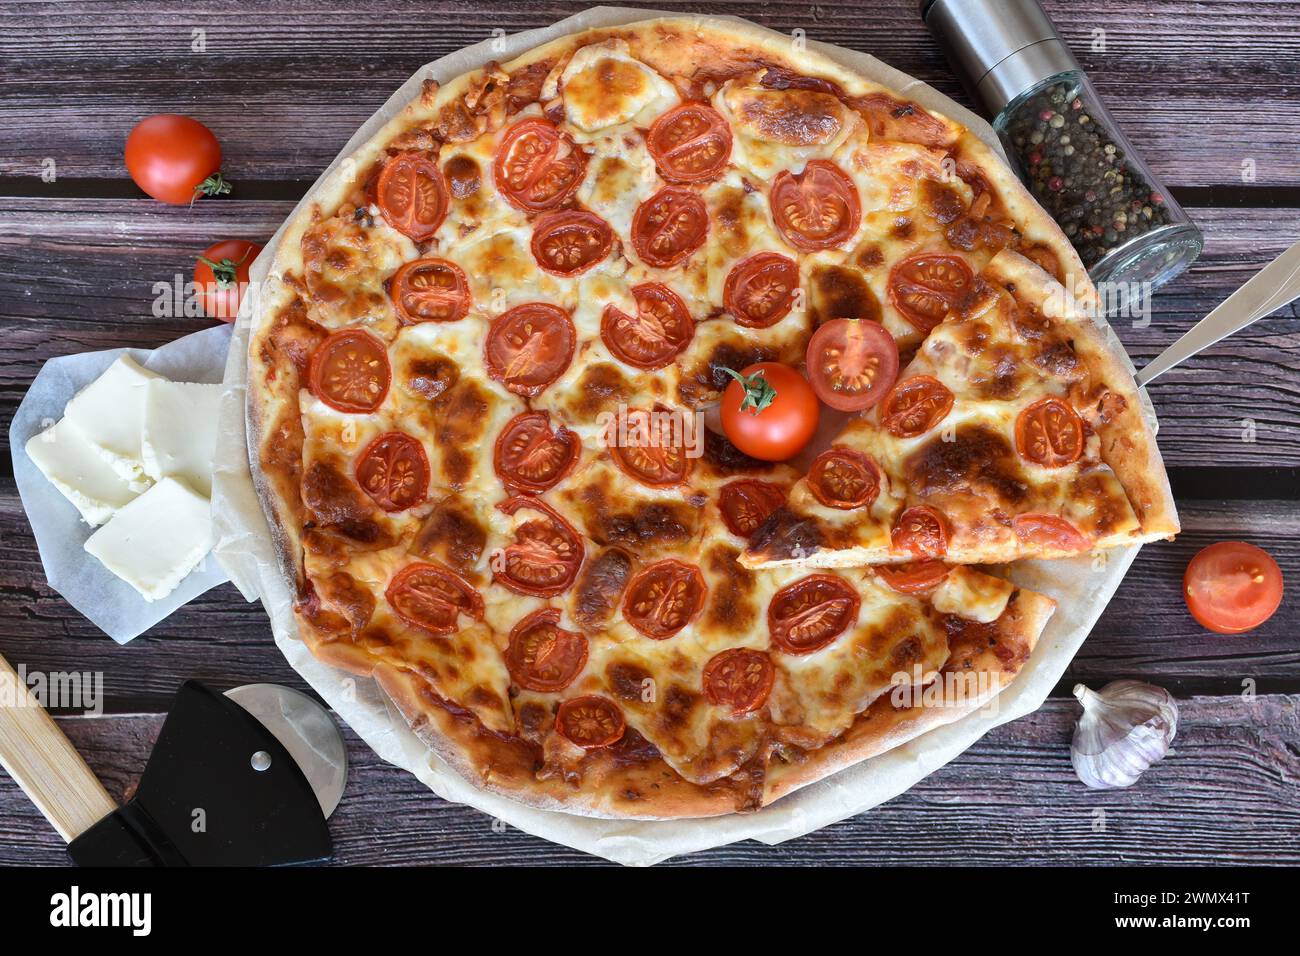 Schaufel mit Pizzascheibe. Pizza Margherita auf rustikalem Holztisch. Kirschtomaten, Mozzarella, Pizzaschneider, Pfeffermühle, Knoblauch. Stockfoto